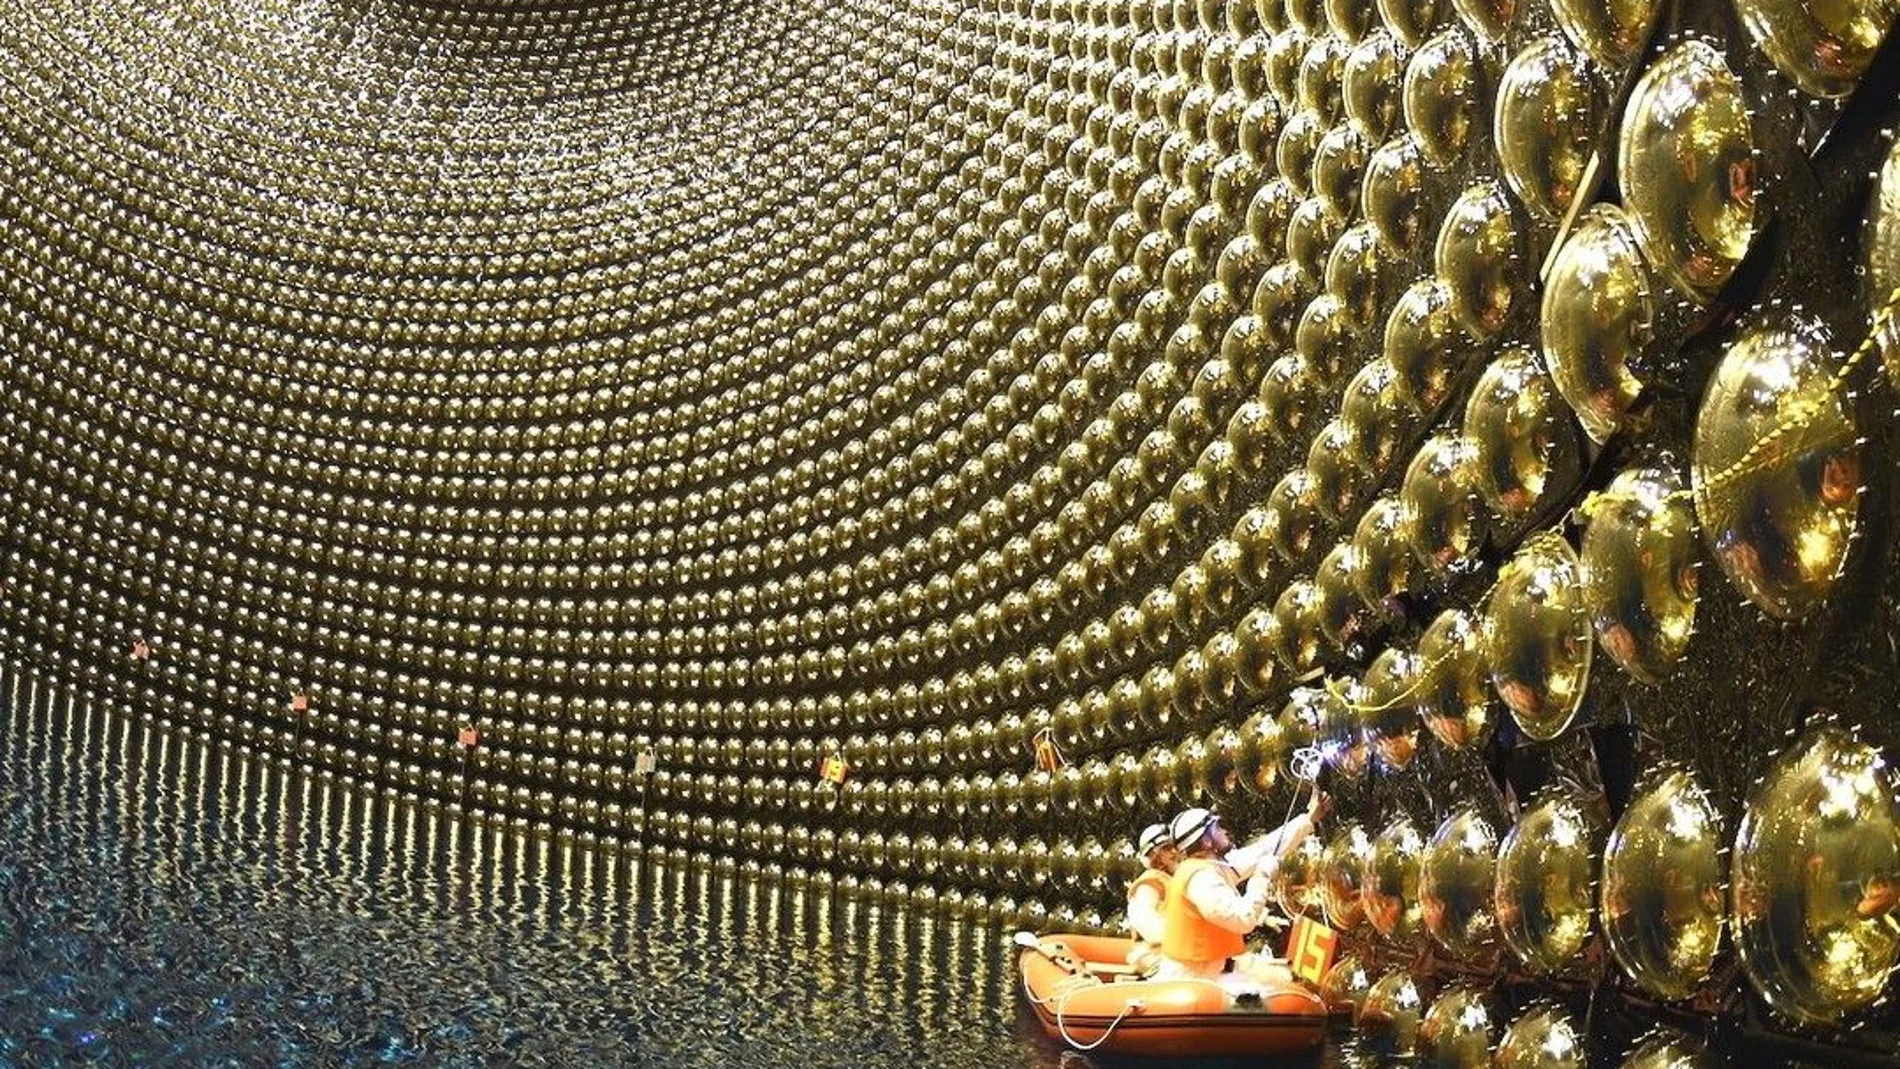 El experimento Super-Kamiokande, un tanque de agua de 50 millones de litros, fue fundamental para demostrar que los neutrinos oscilan. El director de este experimento fue uno de los depositarios del Premio Nobel de Física del año 2015 por este descubrimiento.